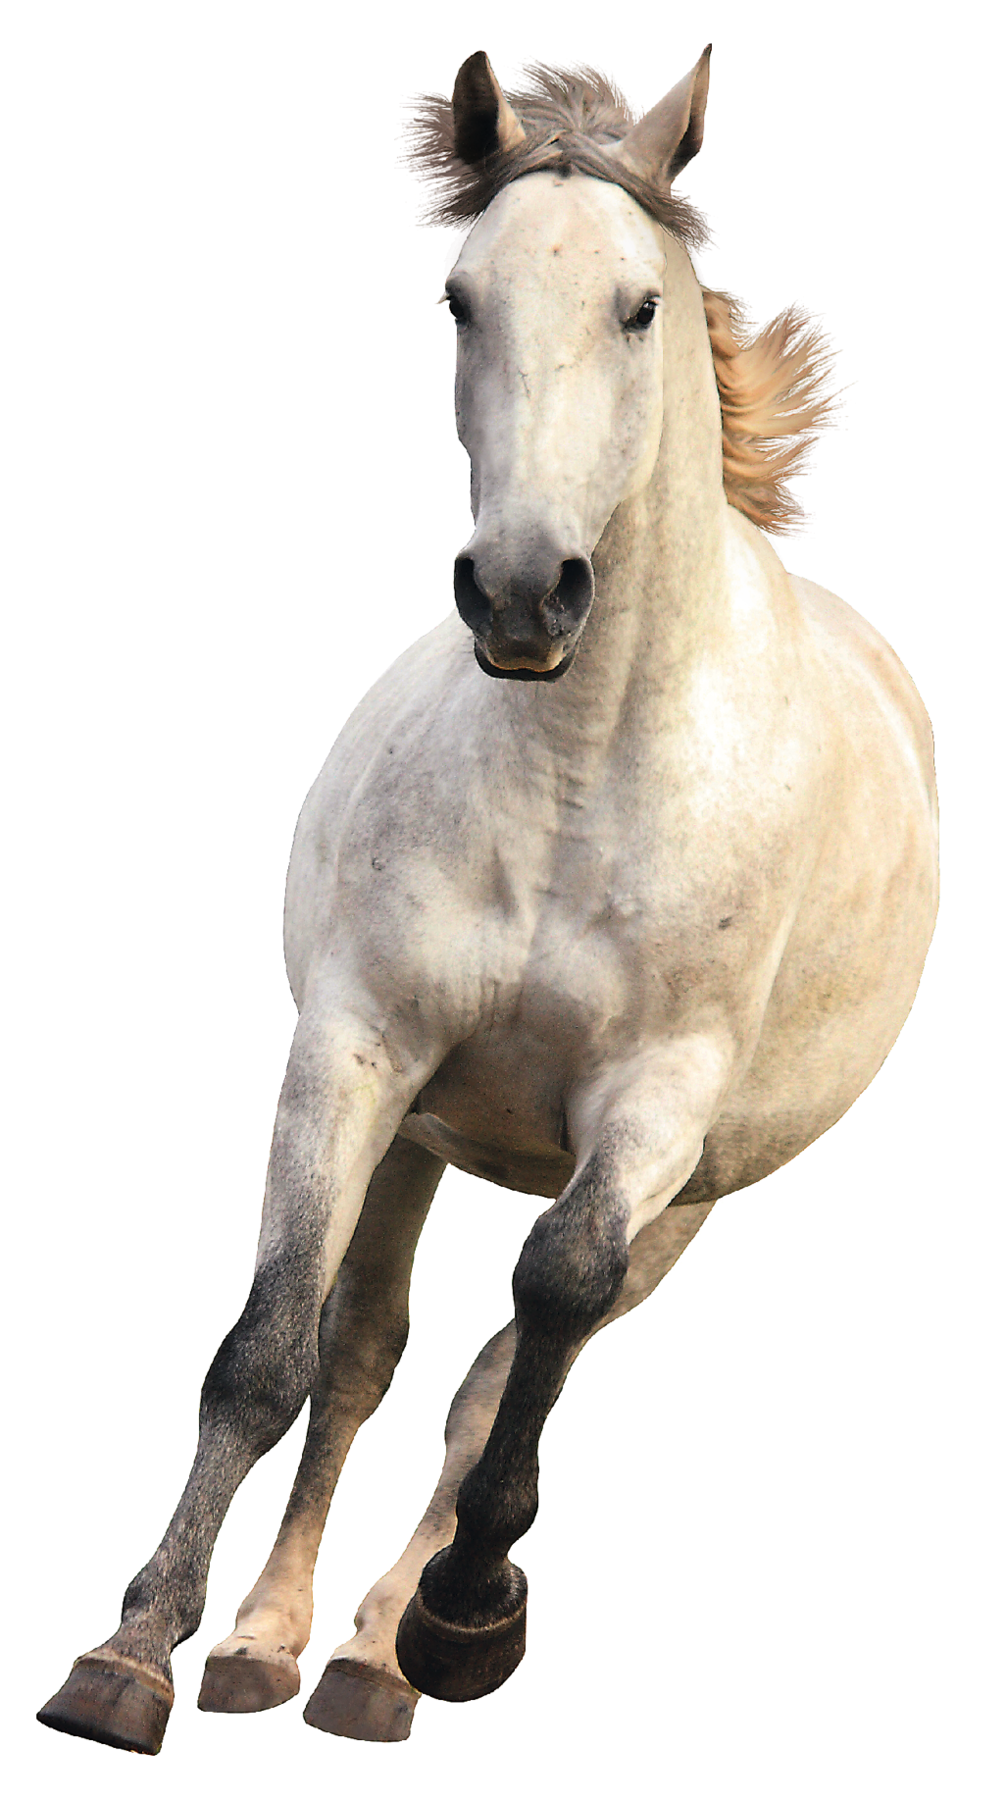 Fotografia. Um cavalo visto de frente, de cor branca, com crina em marrom, patas dianteiras em marrom, com o corpo para a direita, galopando.